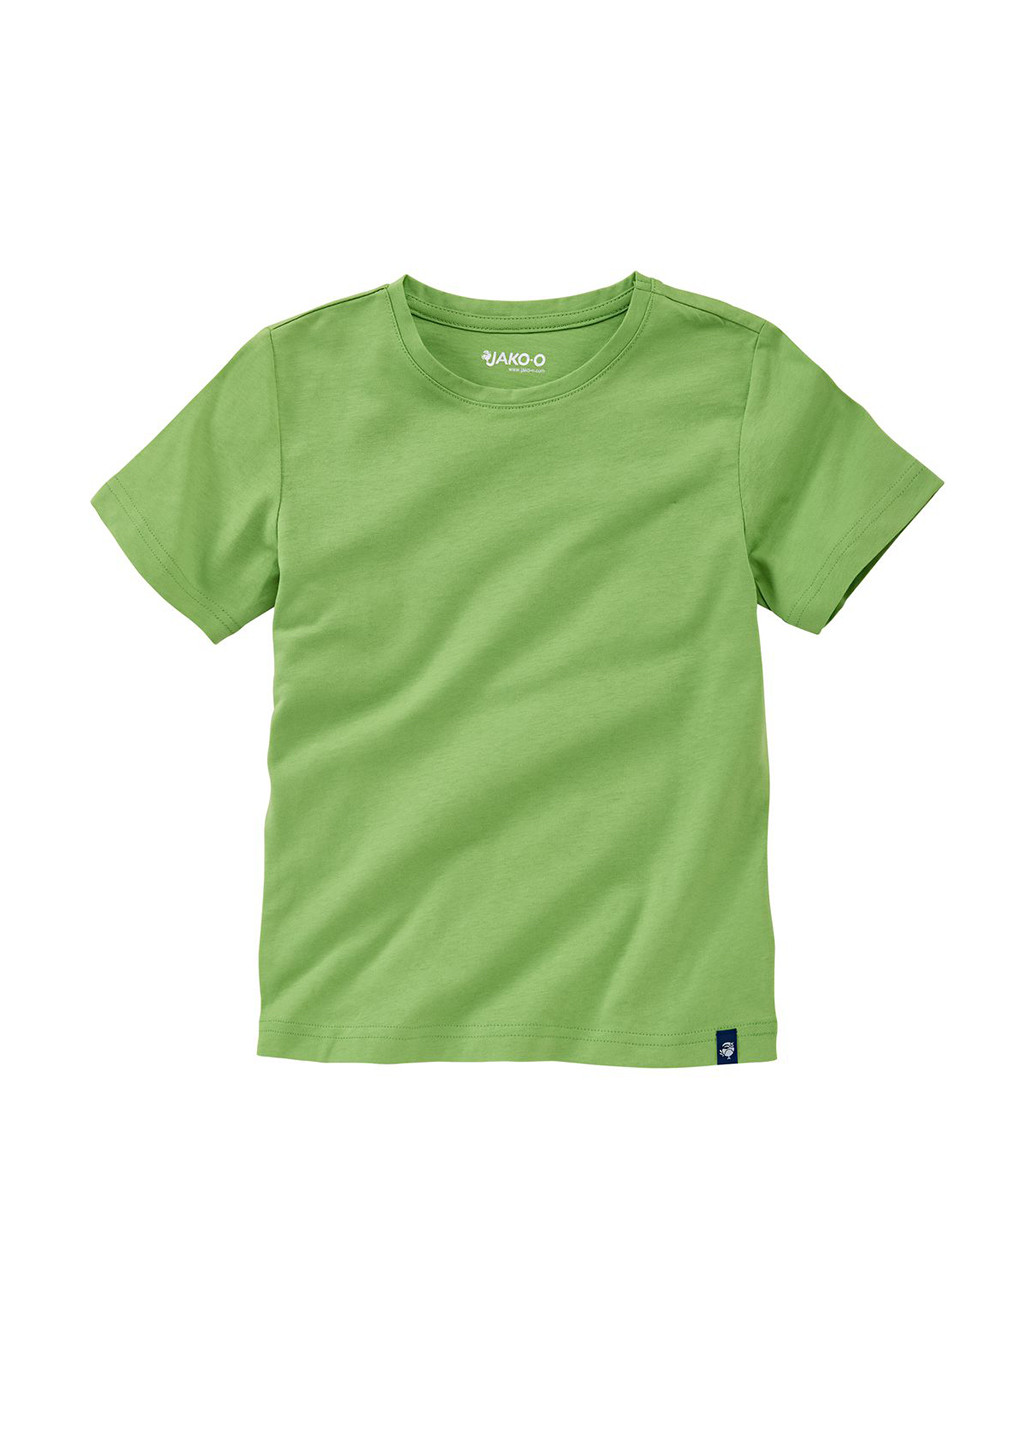 Салатова літня футболка з коротким рукавом Jako-O